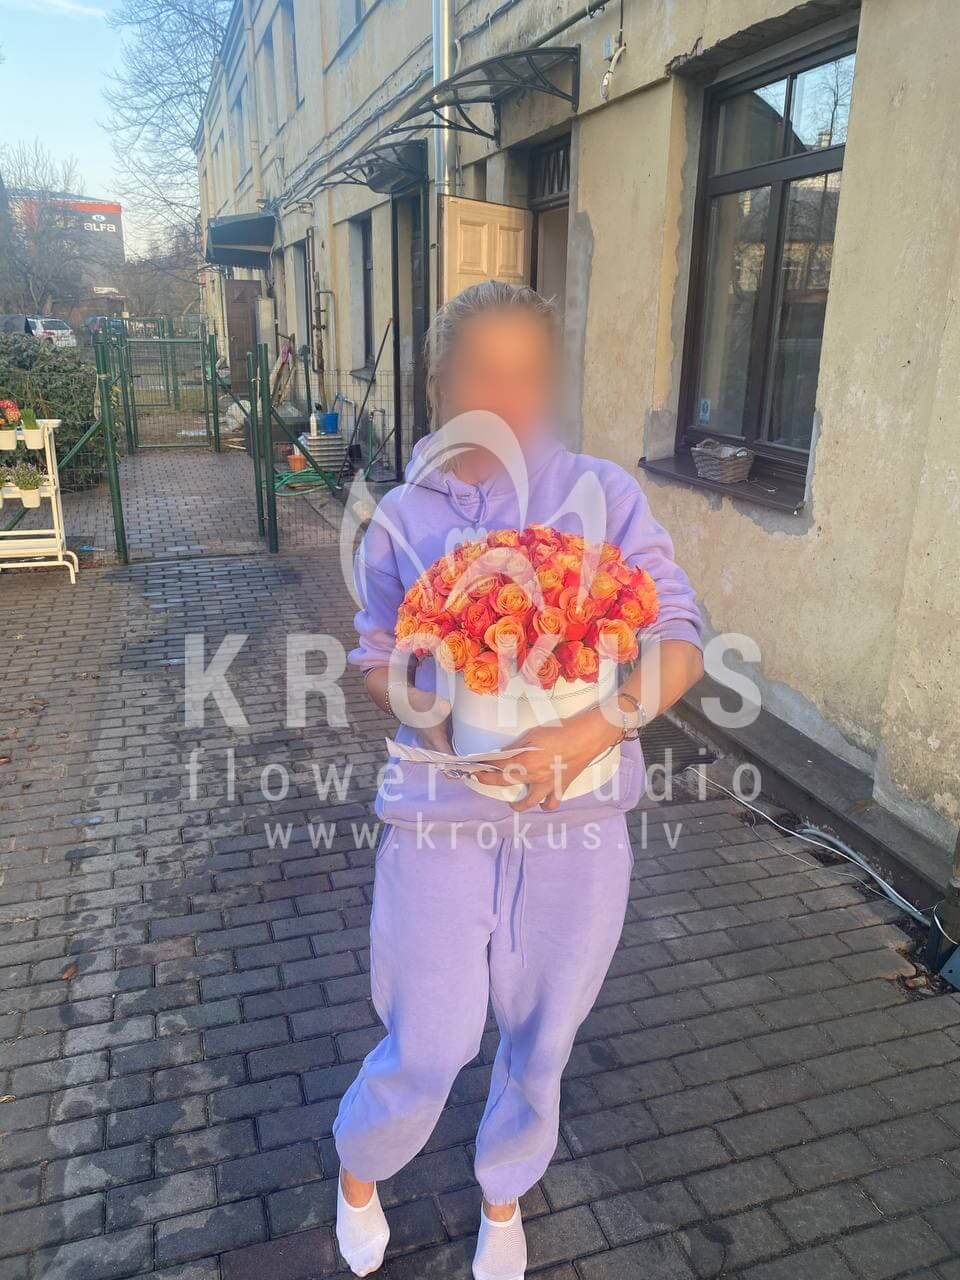 Доставка цветов в город Рига (стильная коробкаоранжевые розы)